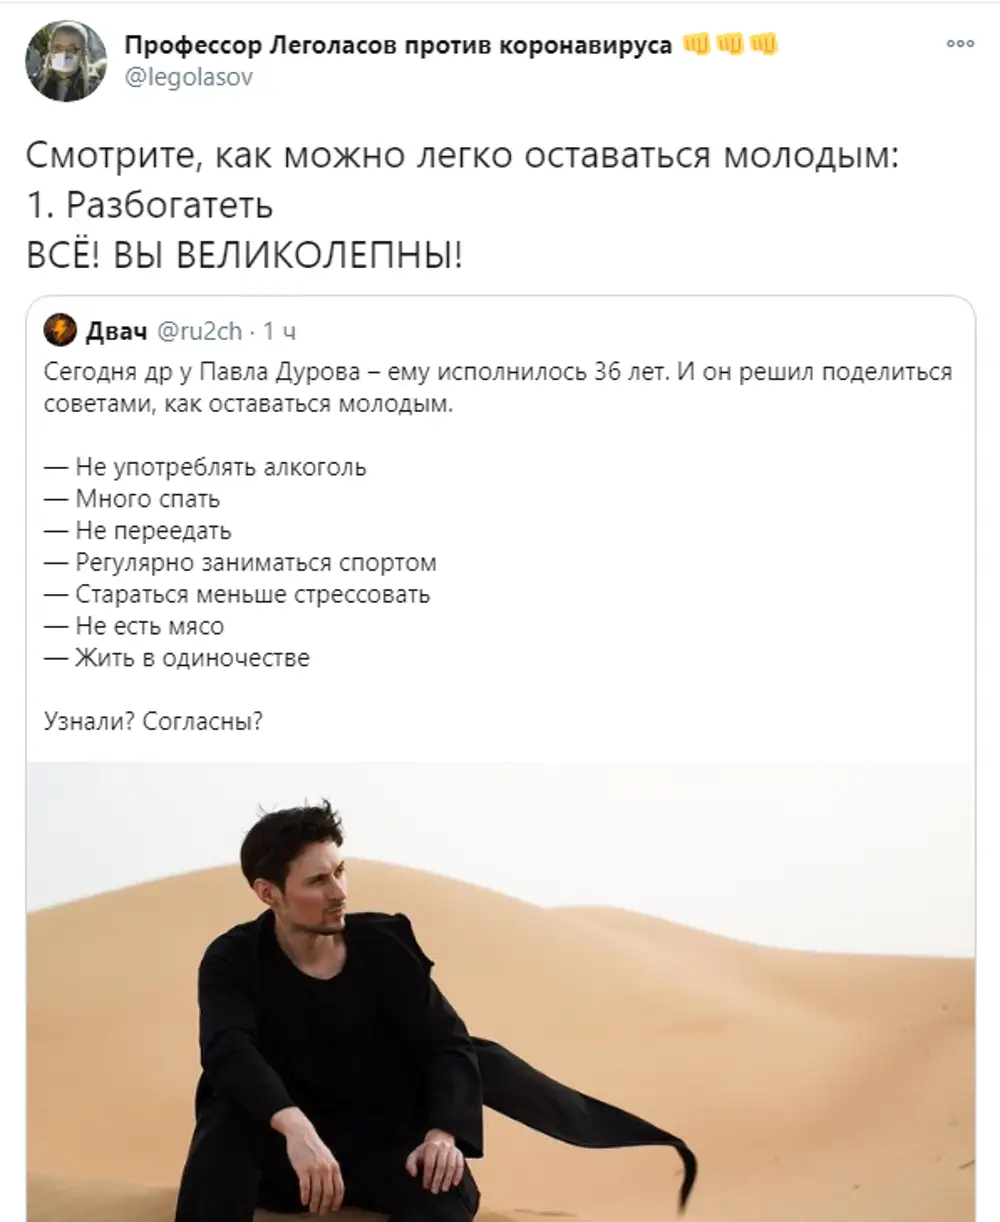 Дуров говорит на русском